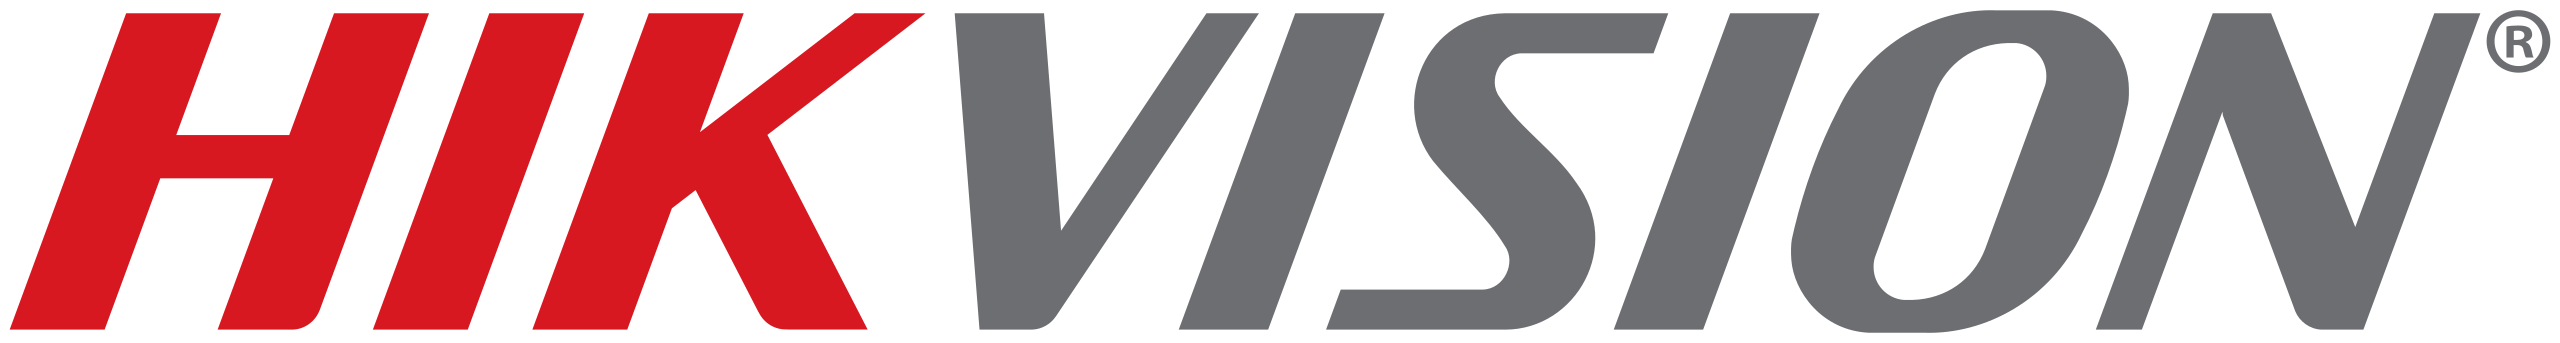 Hikvision_logo.svg